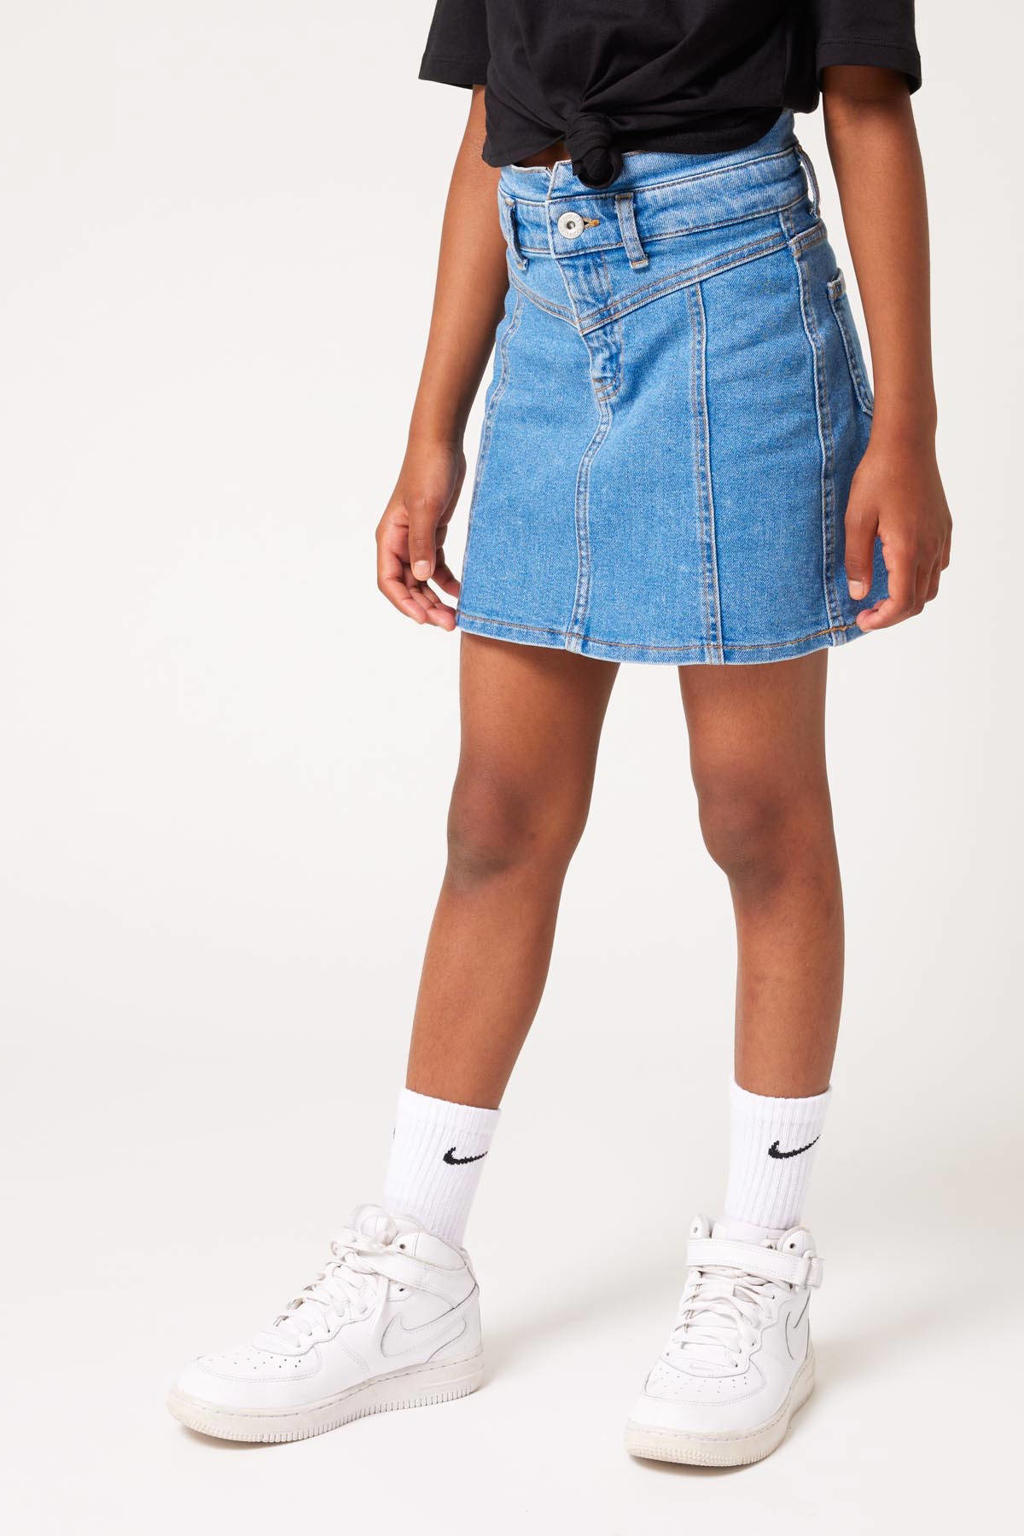 Lichtblauwe meisjes CoolCat Junior spijkerrok Rhona gemaakt van stretchdenim en met rits- en knoopsluiting